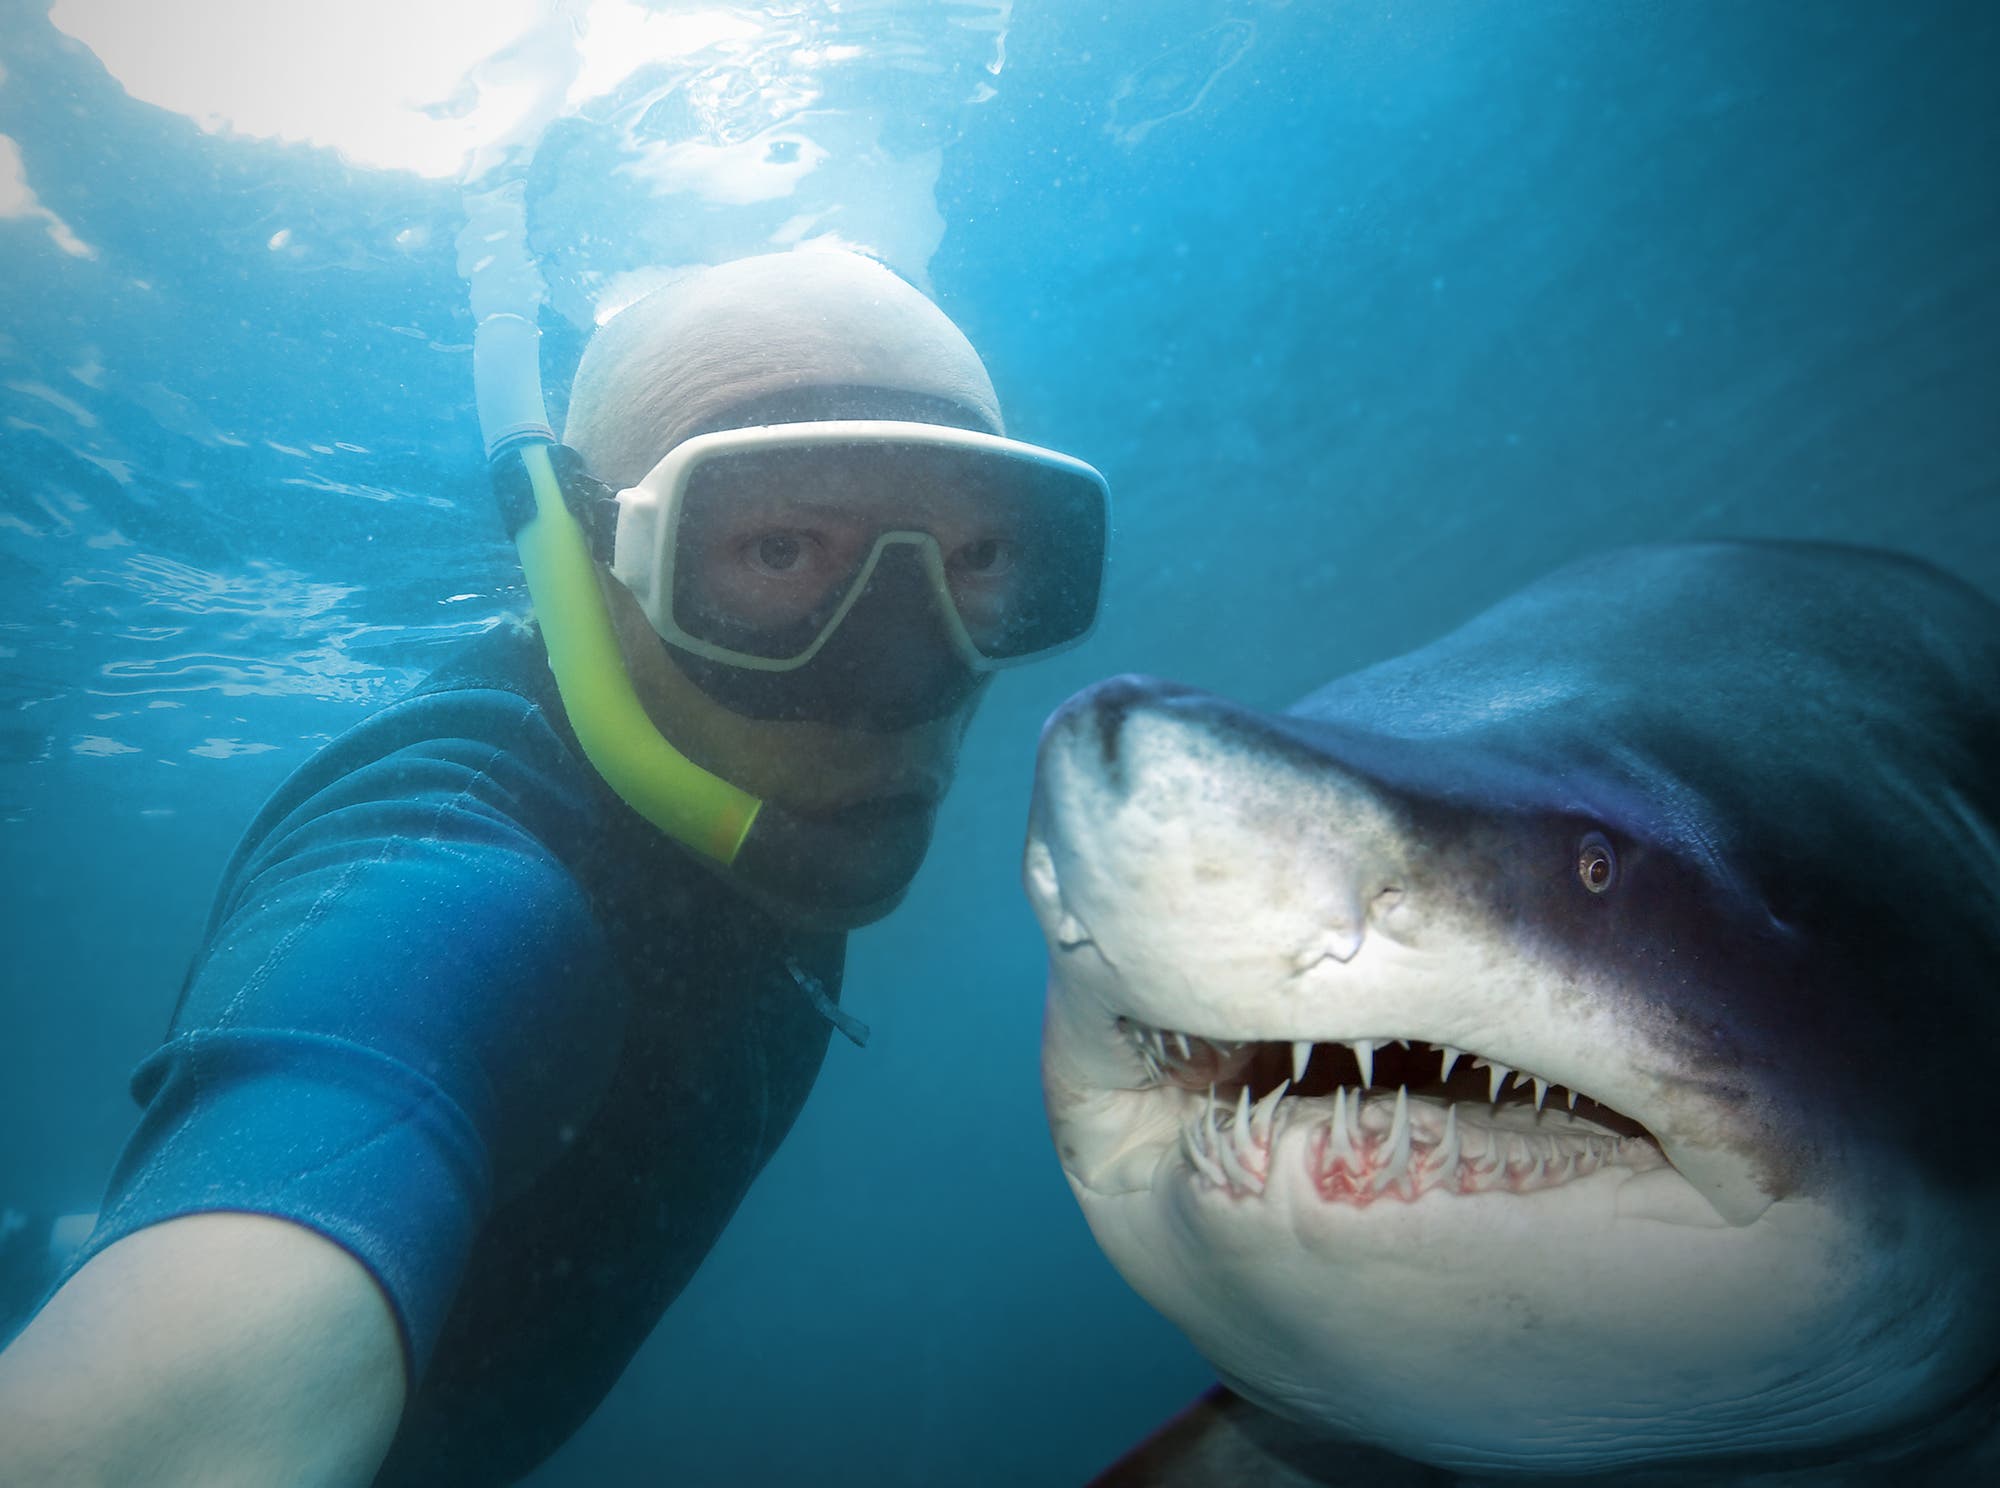 Ein Taucher macht ein Selfie von sich und einem mehr als zwei Meter langen Hai. Anders als die meisten Menschen meinen, sind die meisten Hai-Arten für Menschen völlig ungefährlich. Dagegen werden jedes Jahr etwa 70 Millionen Haie von Menschen getötet.